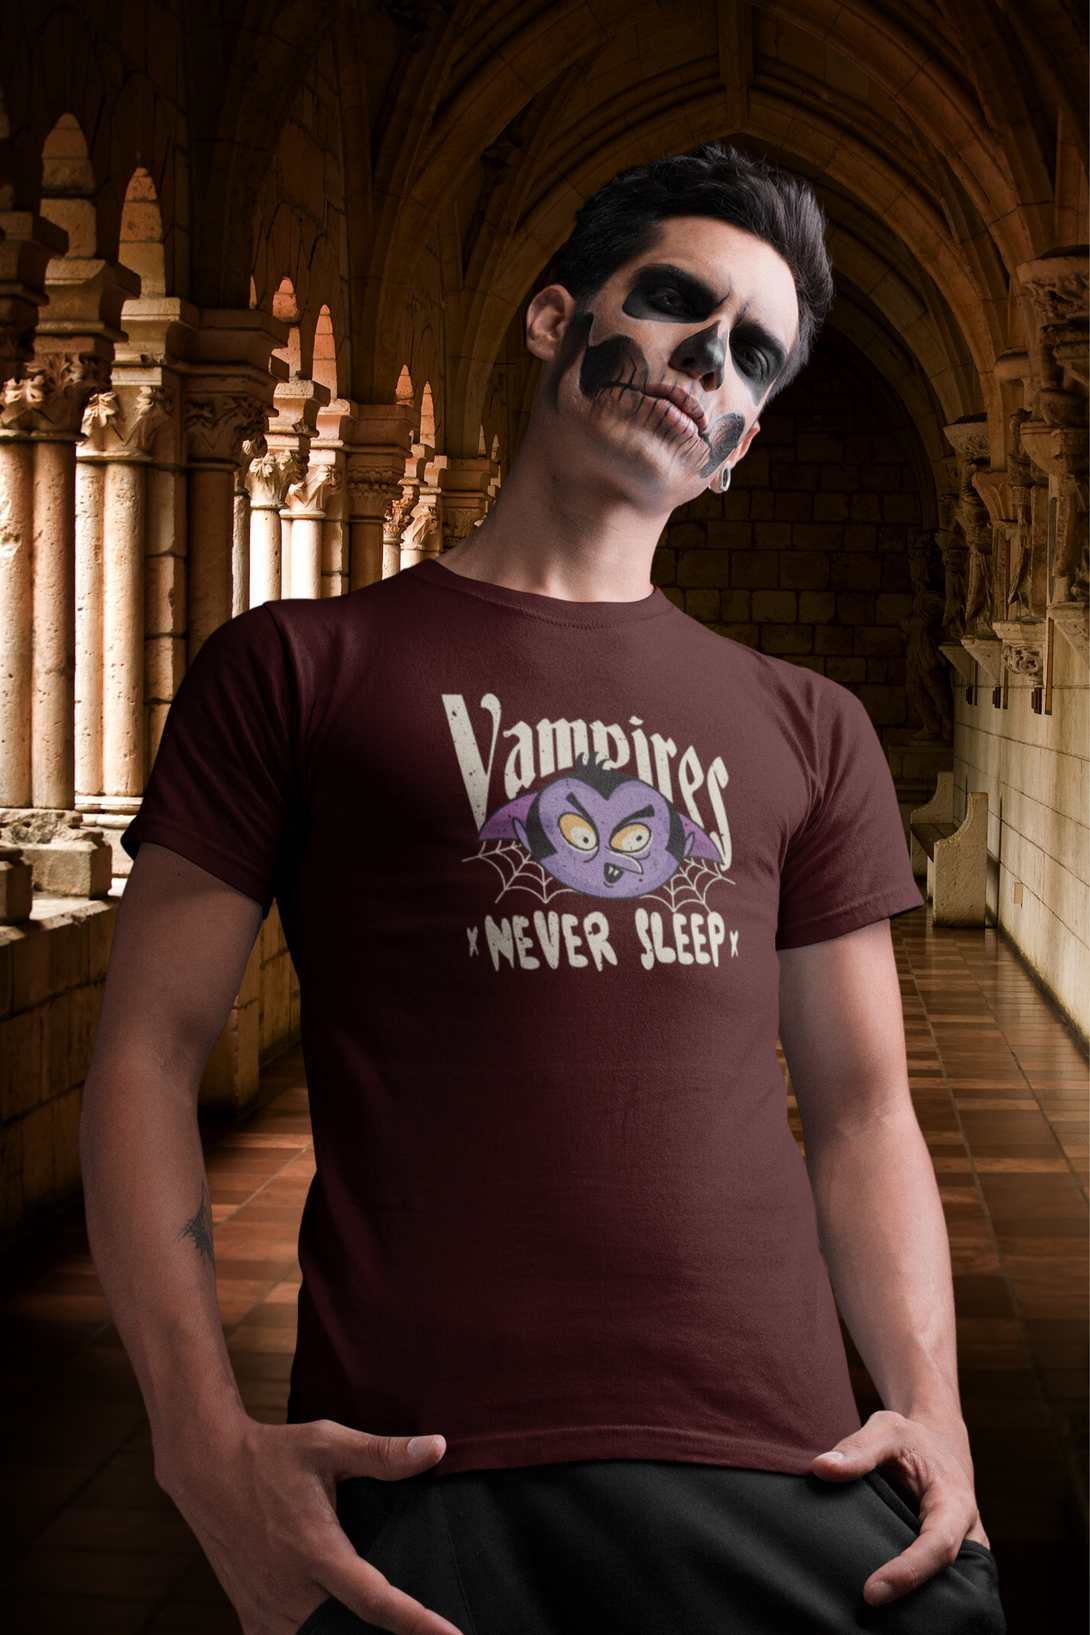 Vampires Never Sleep Printed T-Shirt For Men - WowWaves - 5